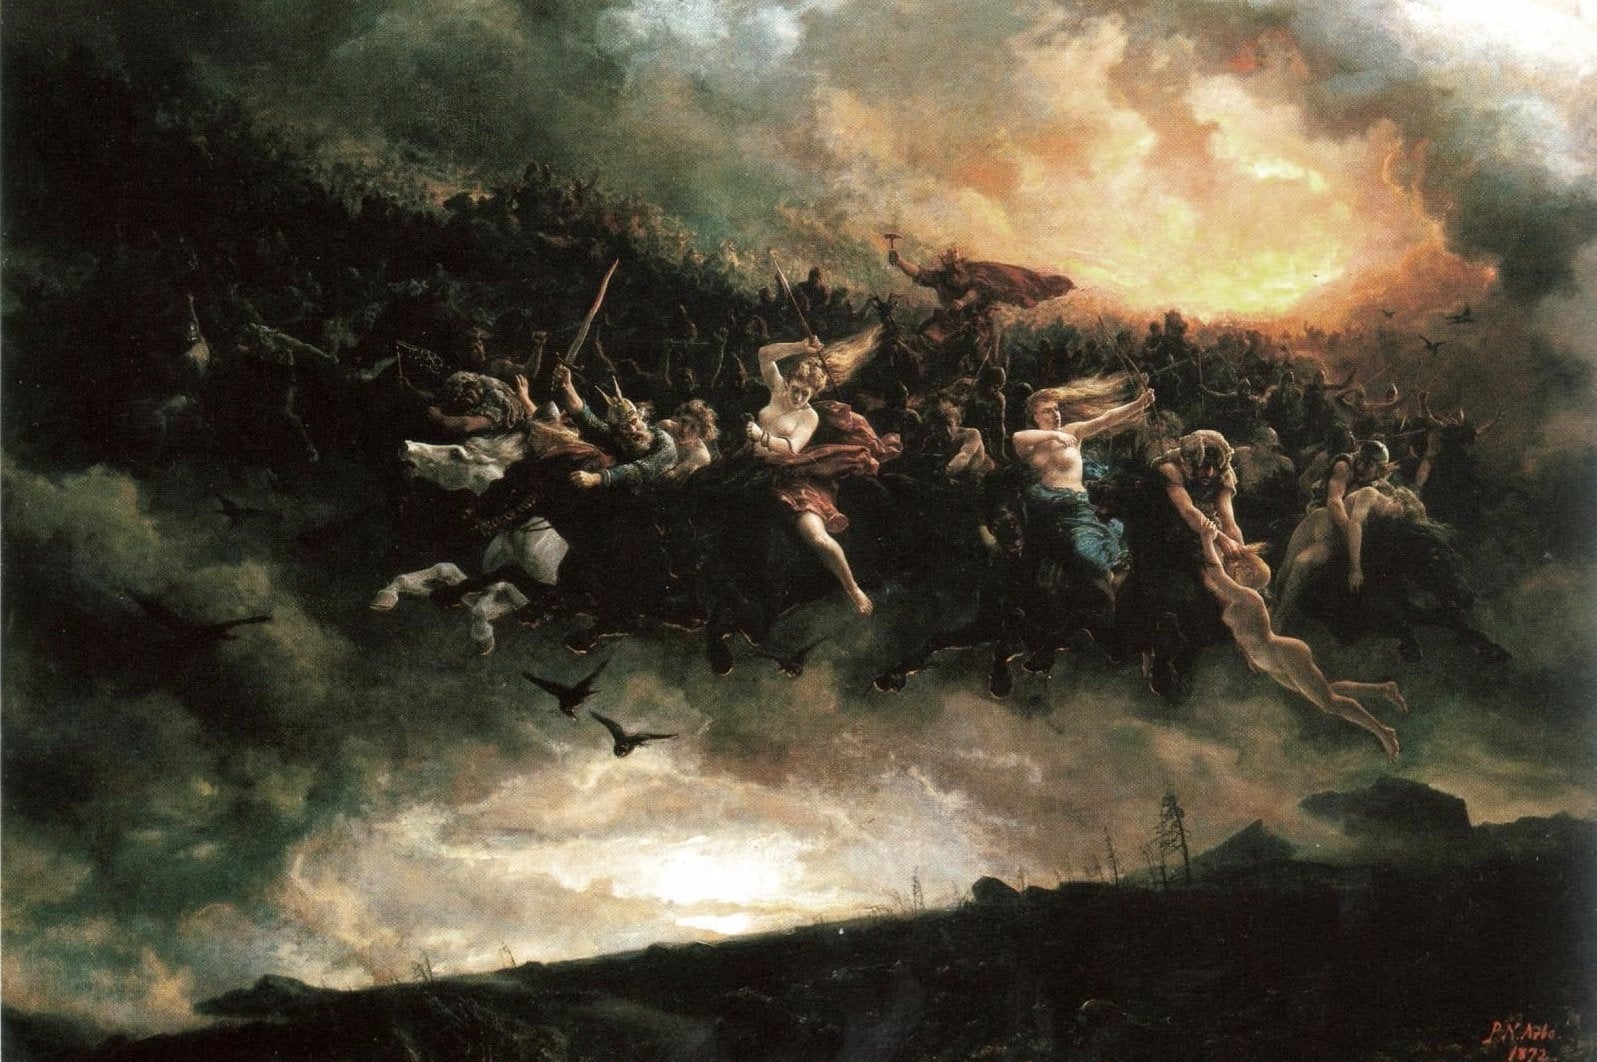 Afbeeldingen van Gerucht: God of War 4 maakt gebruik van Noorse mythologie